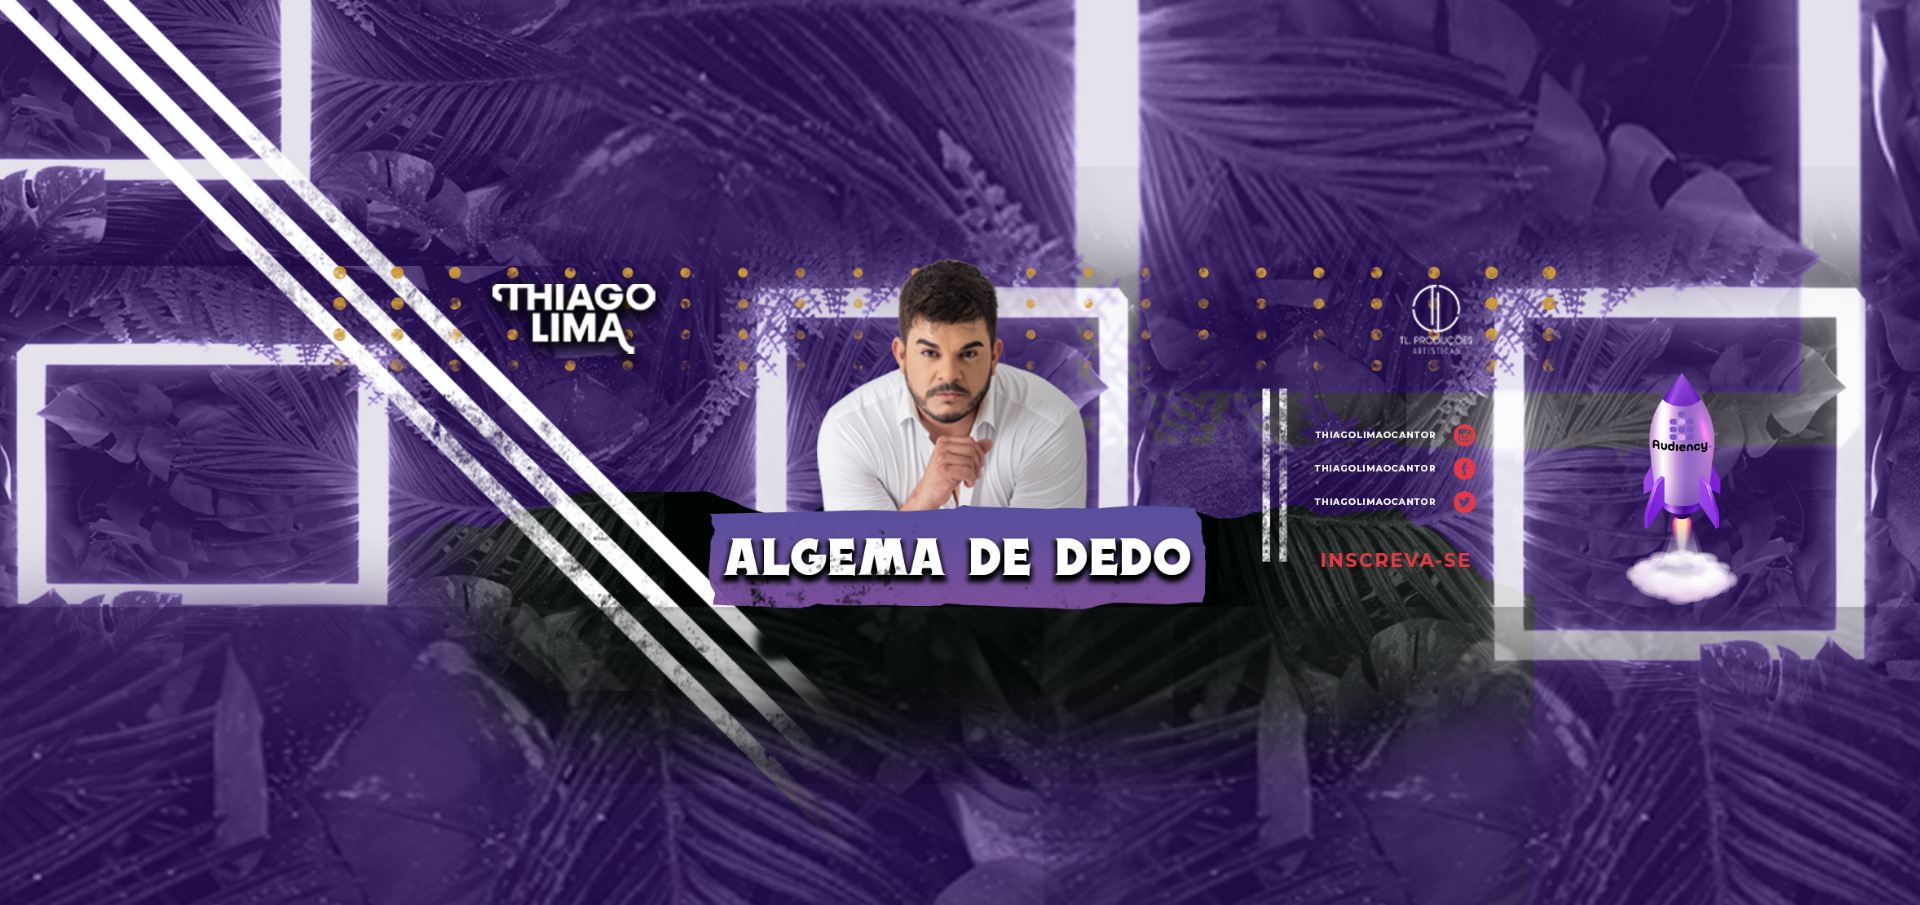 Thiago Lima lança hit "Algema de Dedo" para as rádios do Brasil